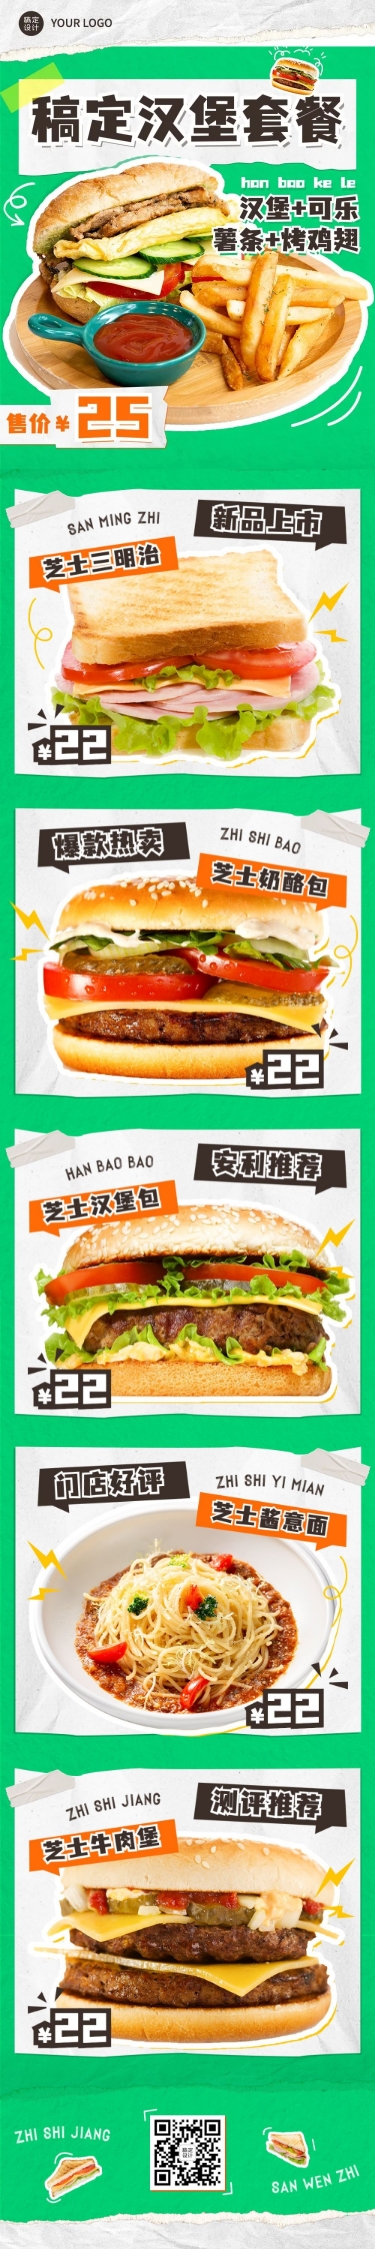 餐饮汉堡鸡腿可乐快餐产品营销文章长图